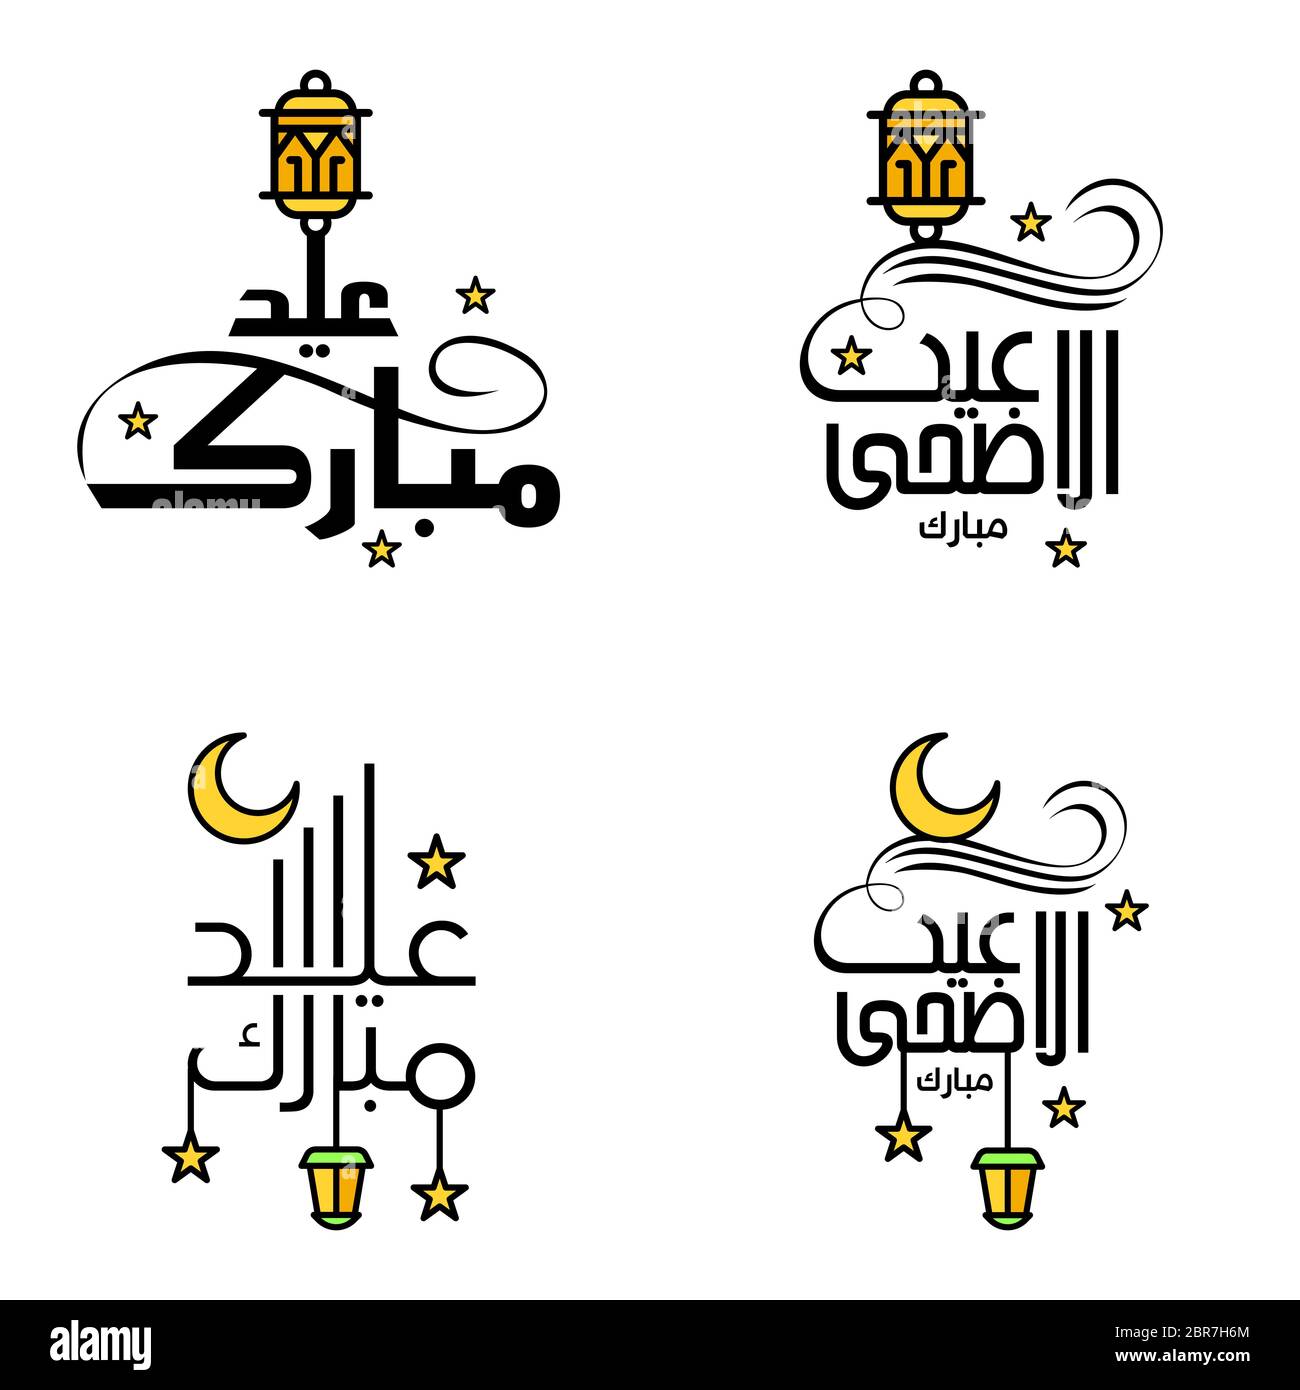 Schöne Sammlung von 4 arabischen Kalligraphie Schriften in Glückwunschkarten verwendet anlässlich der islamischen Feiertage wie religiöse Hol Stock Vektor